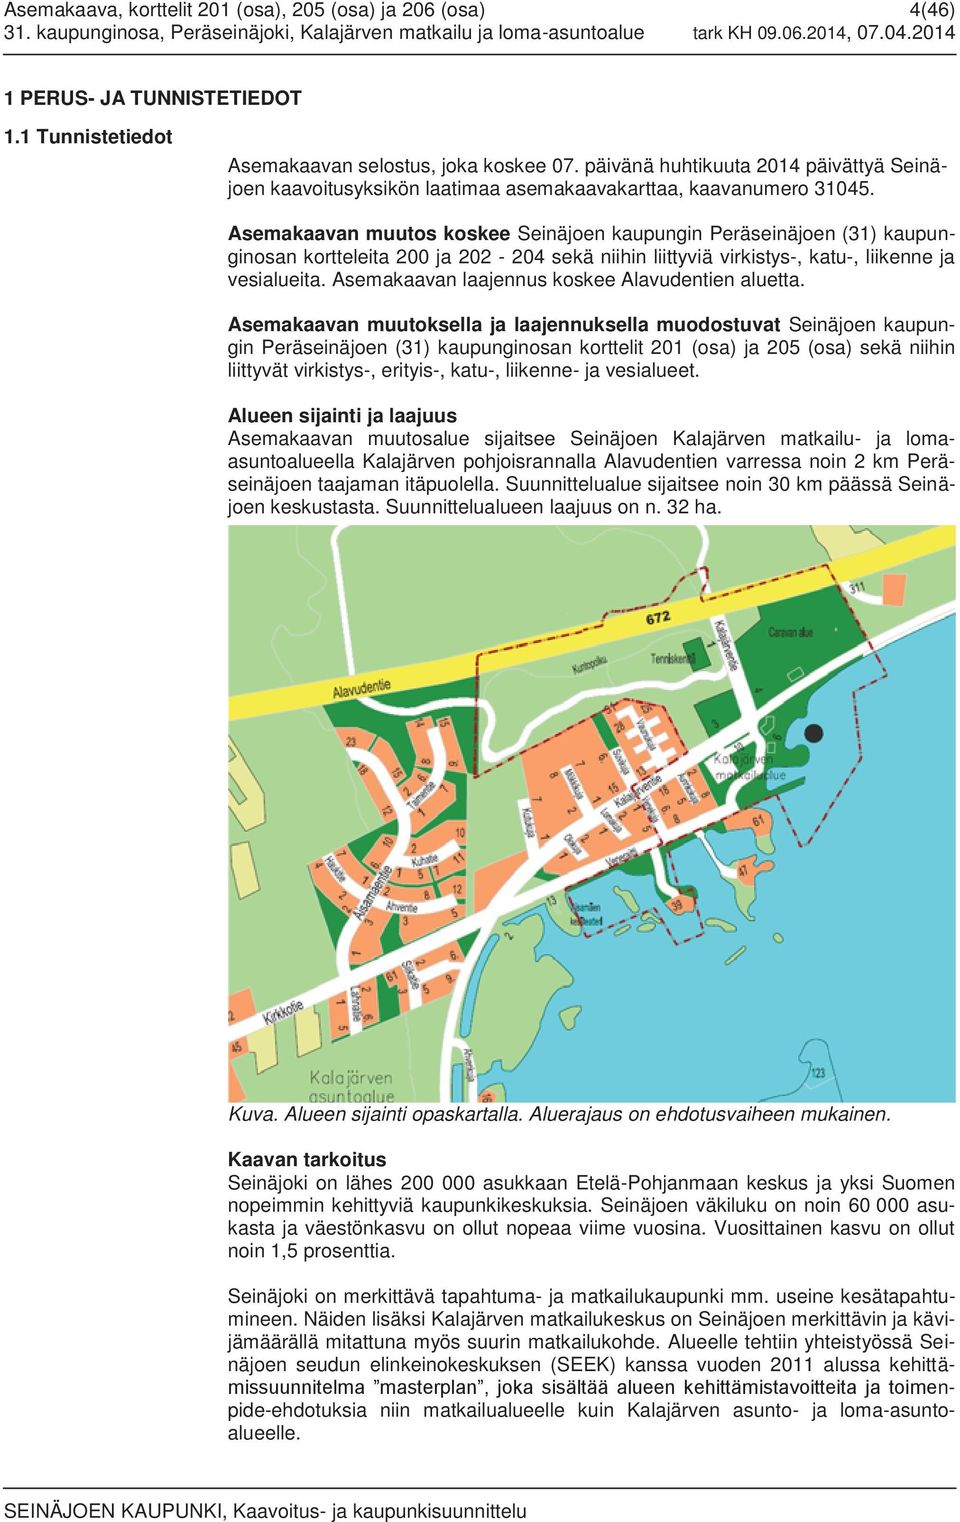 Asemakaavan muutos koskee Seinäjoen kaupungin Peräseinäjoen (31) kaupunginosan kortteleita 200 ja 202-204 sekä niihin liittyviä virkistys-, katu-, liikenne ja vesialueita.